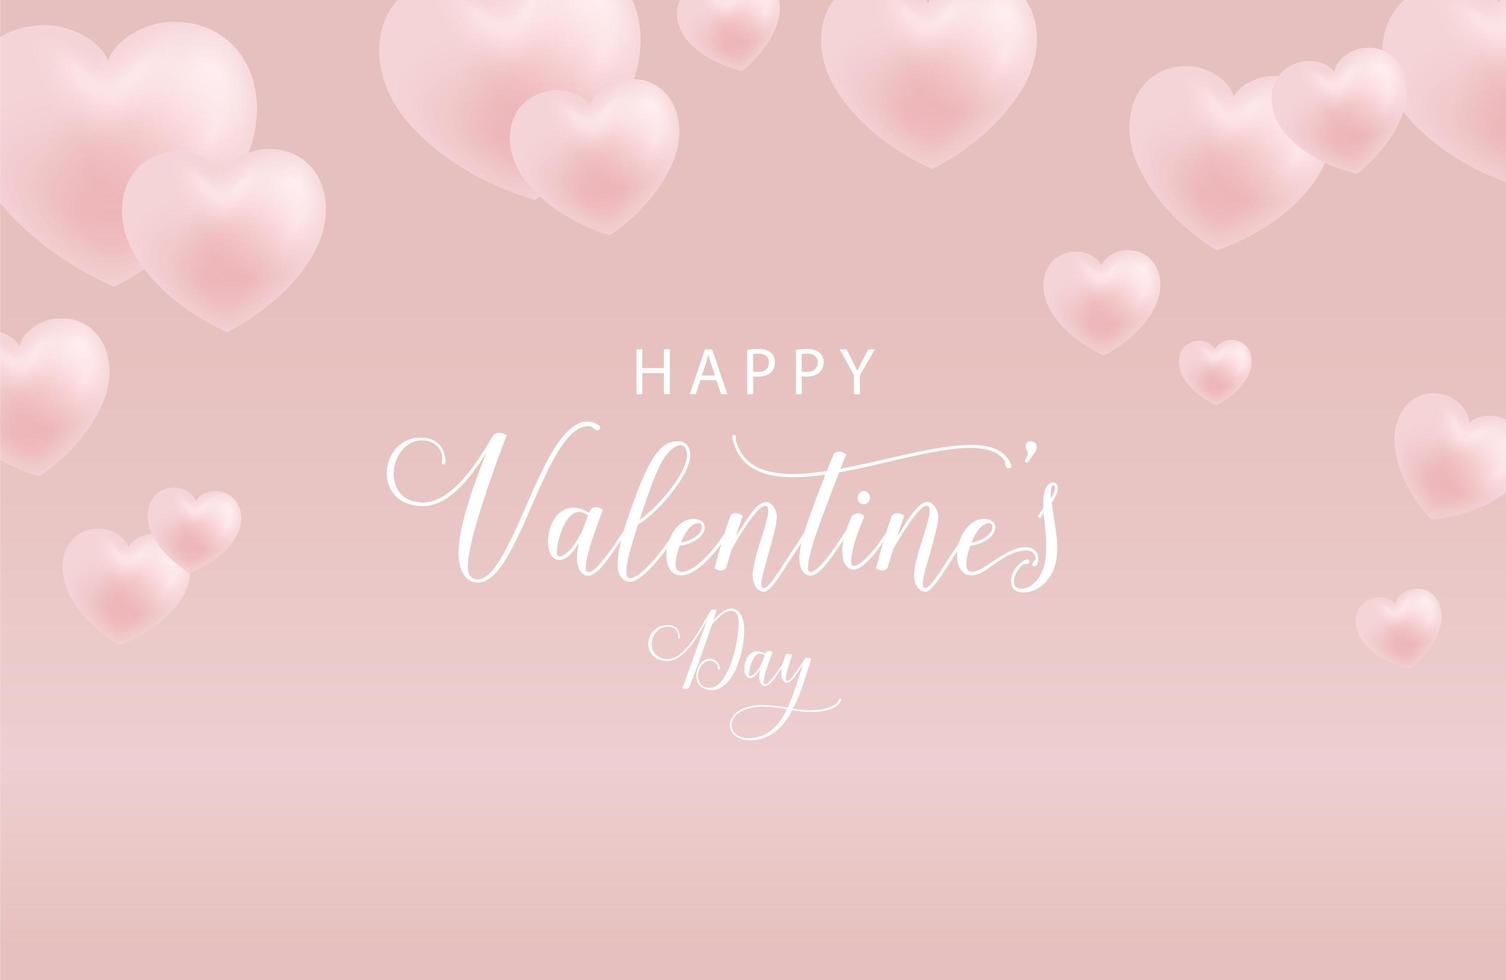 gelukkige Valentijnsdag achtergrond, Valentijnsdag banner voor liefde vector